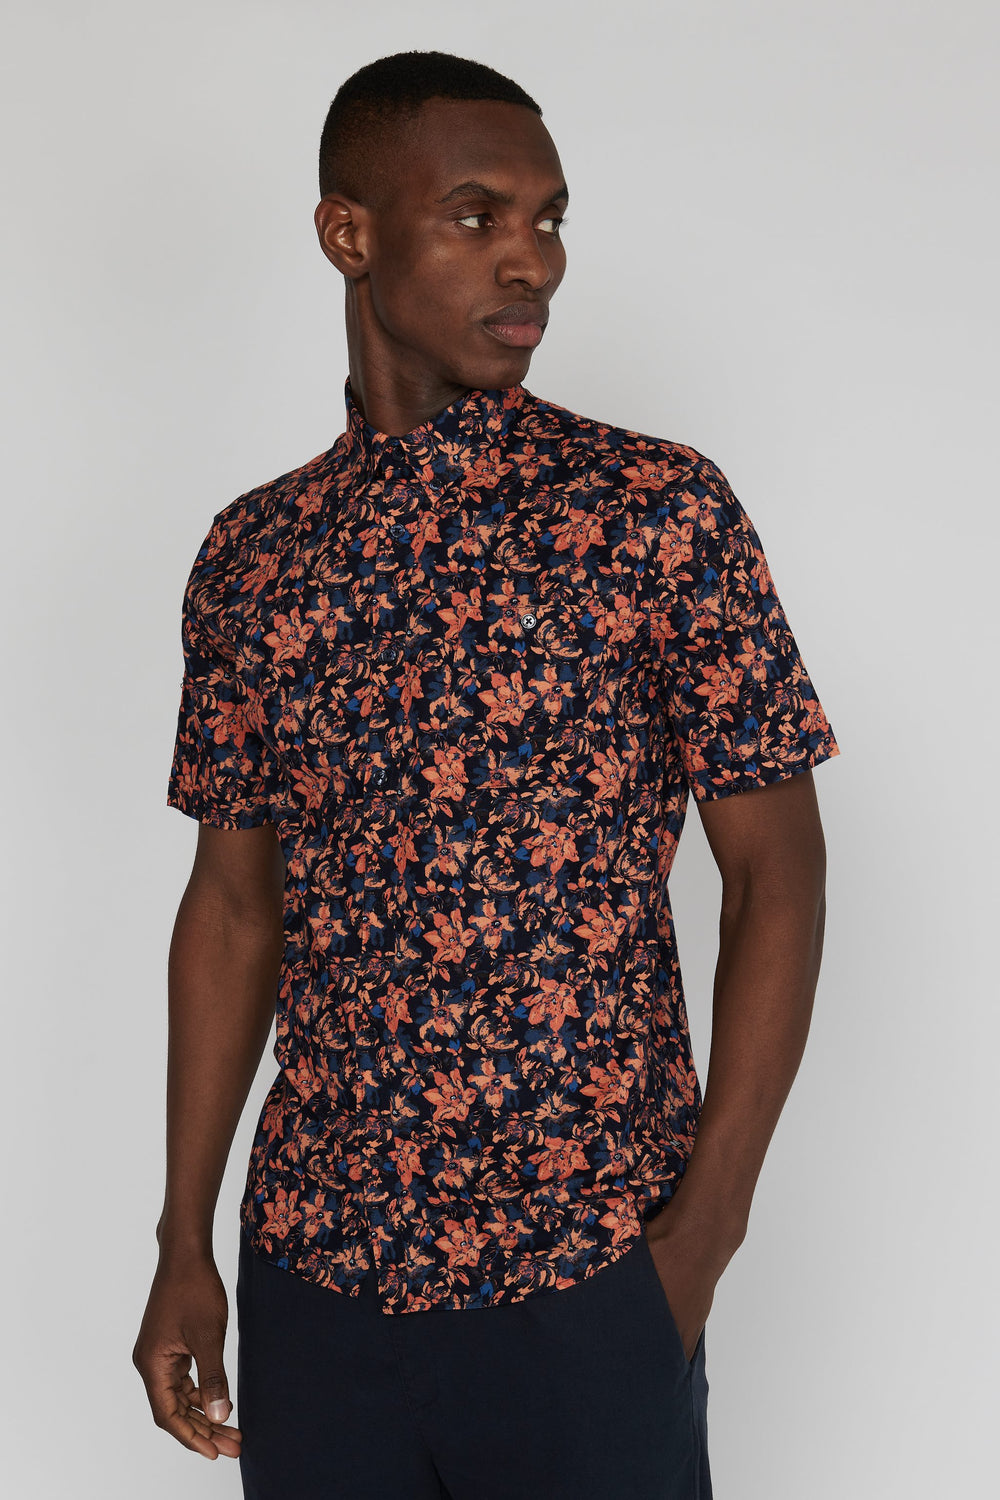 Matinique Floral Print Shirt Navy - Urban Menswear